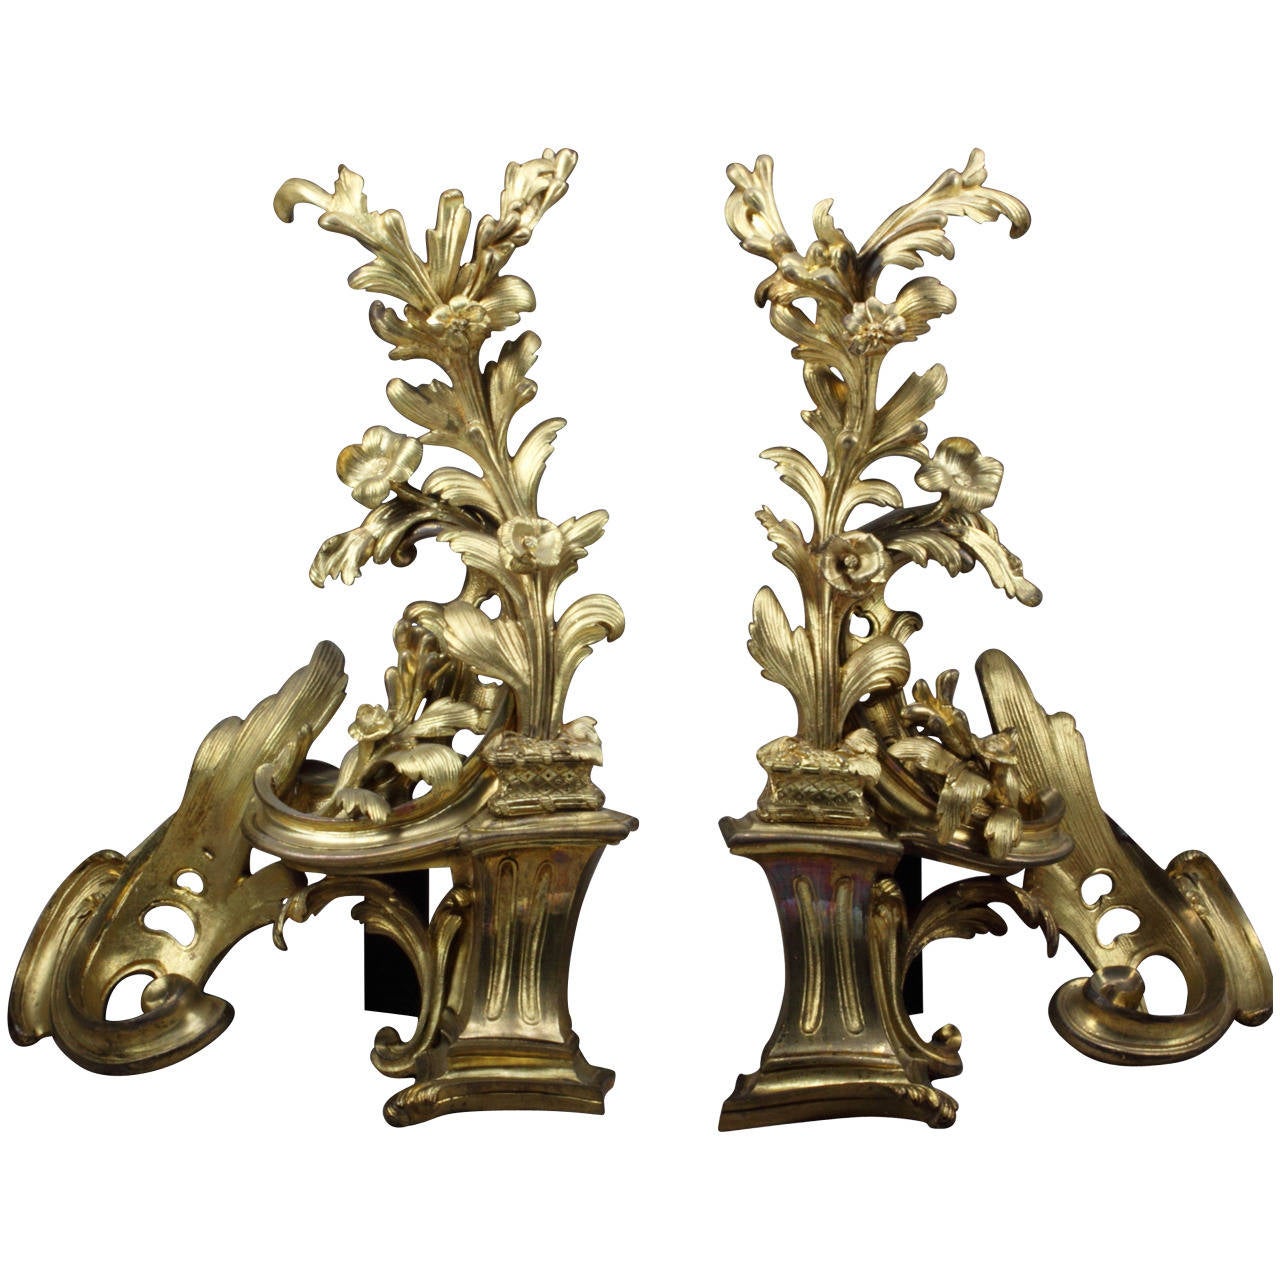 Paire de chenets de cheminée en bronze doré de style rococo français de la fin du XIXe siècle